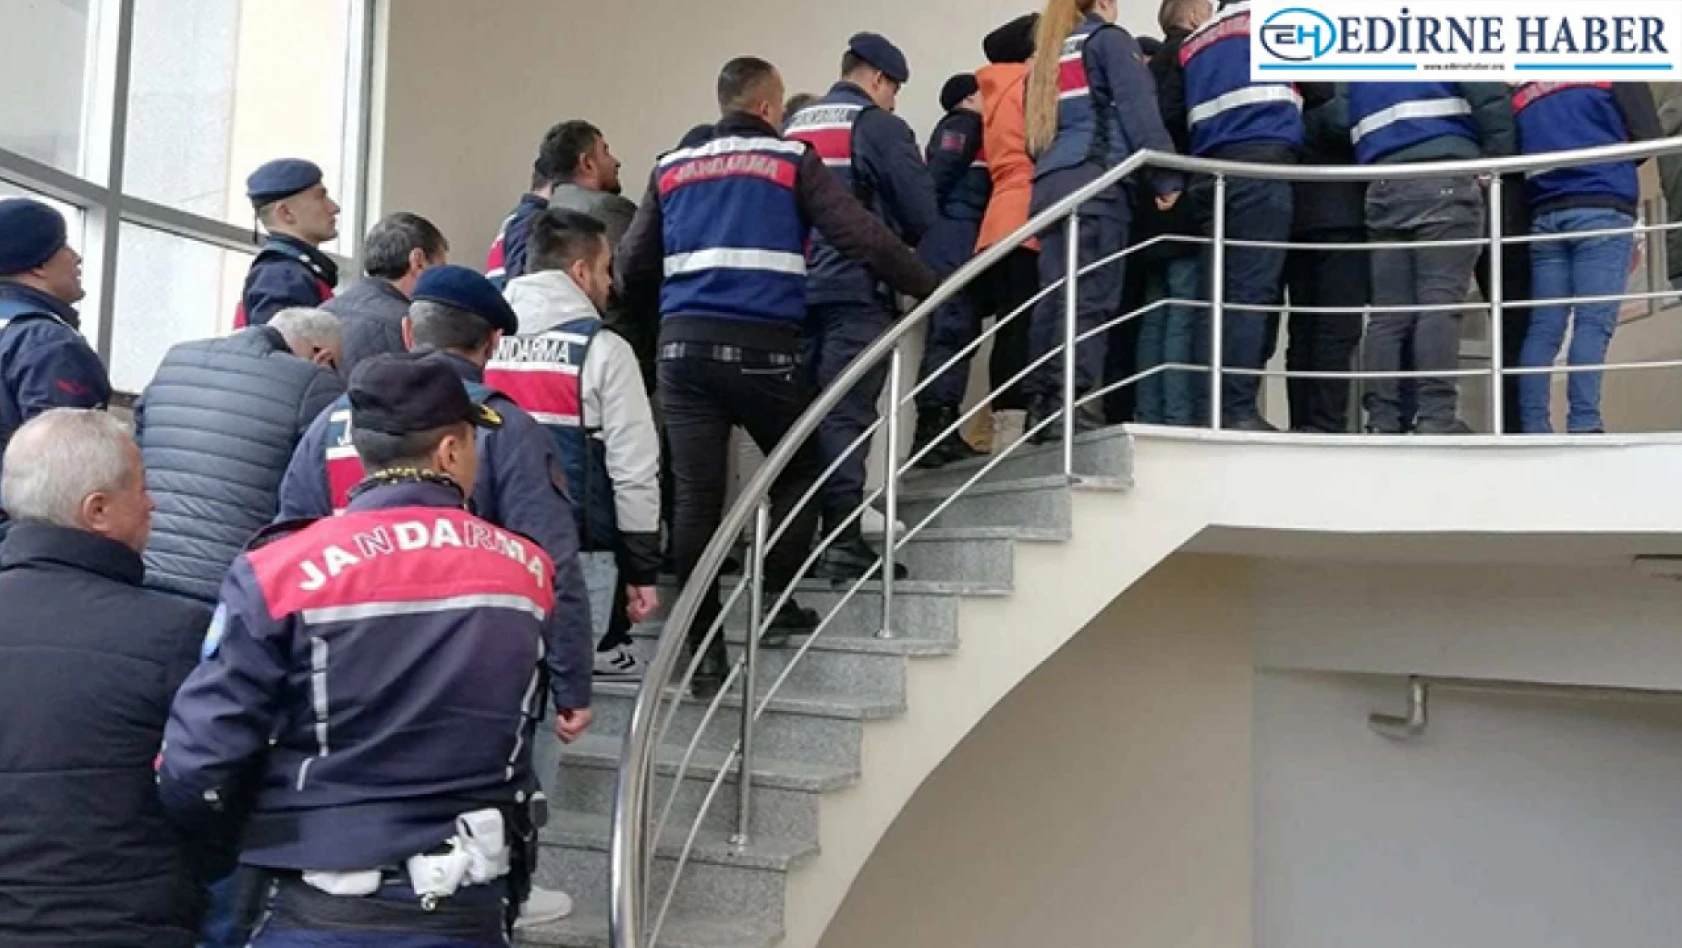 Jandarmadan organize suç örgütüne operasyonda 14 kişi tutuklandı